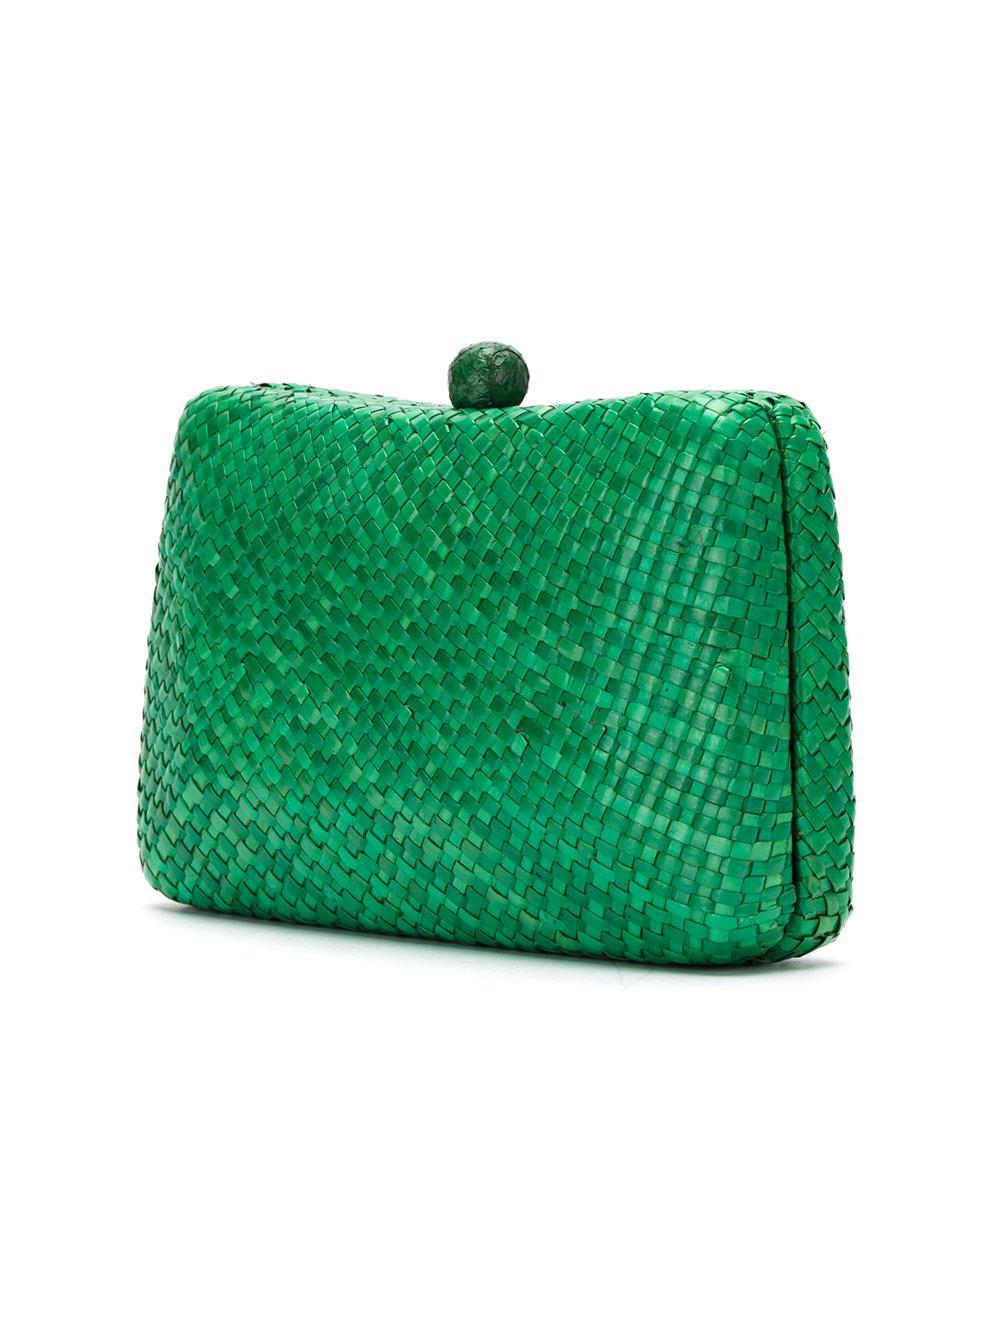 Serpui Clutch Bag in Green - Lyst